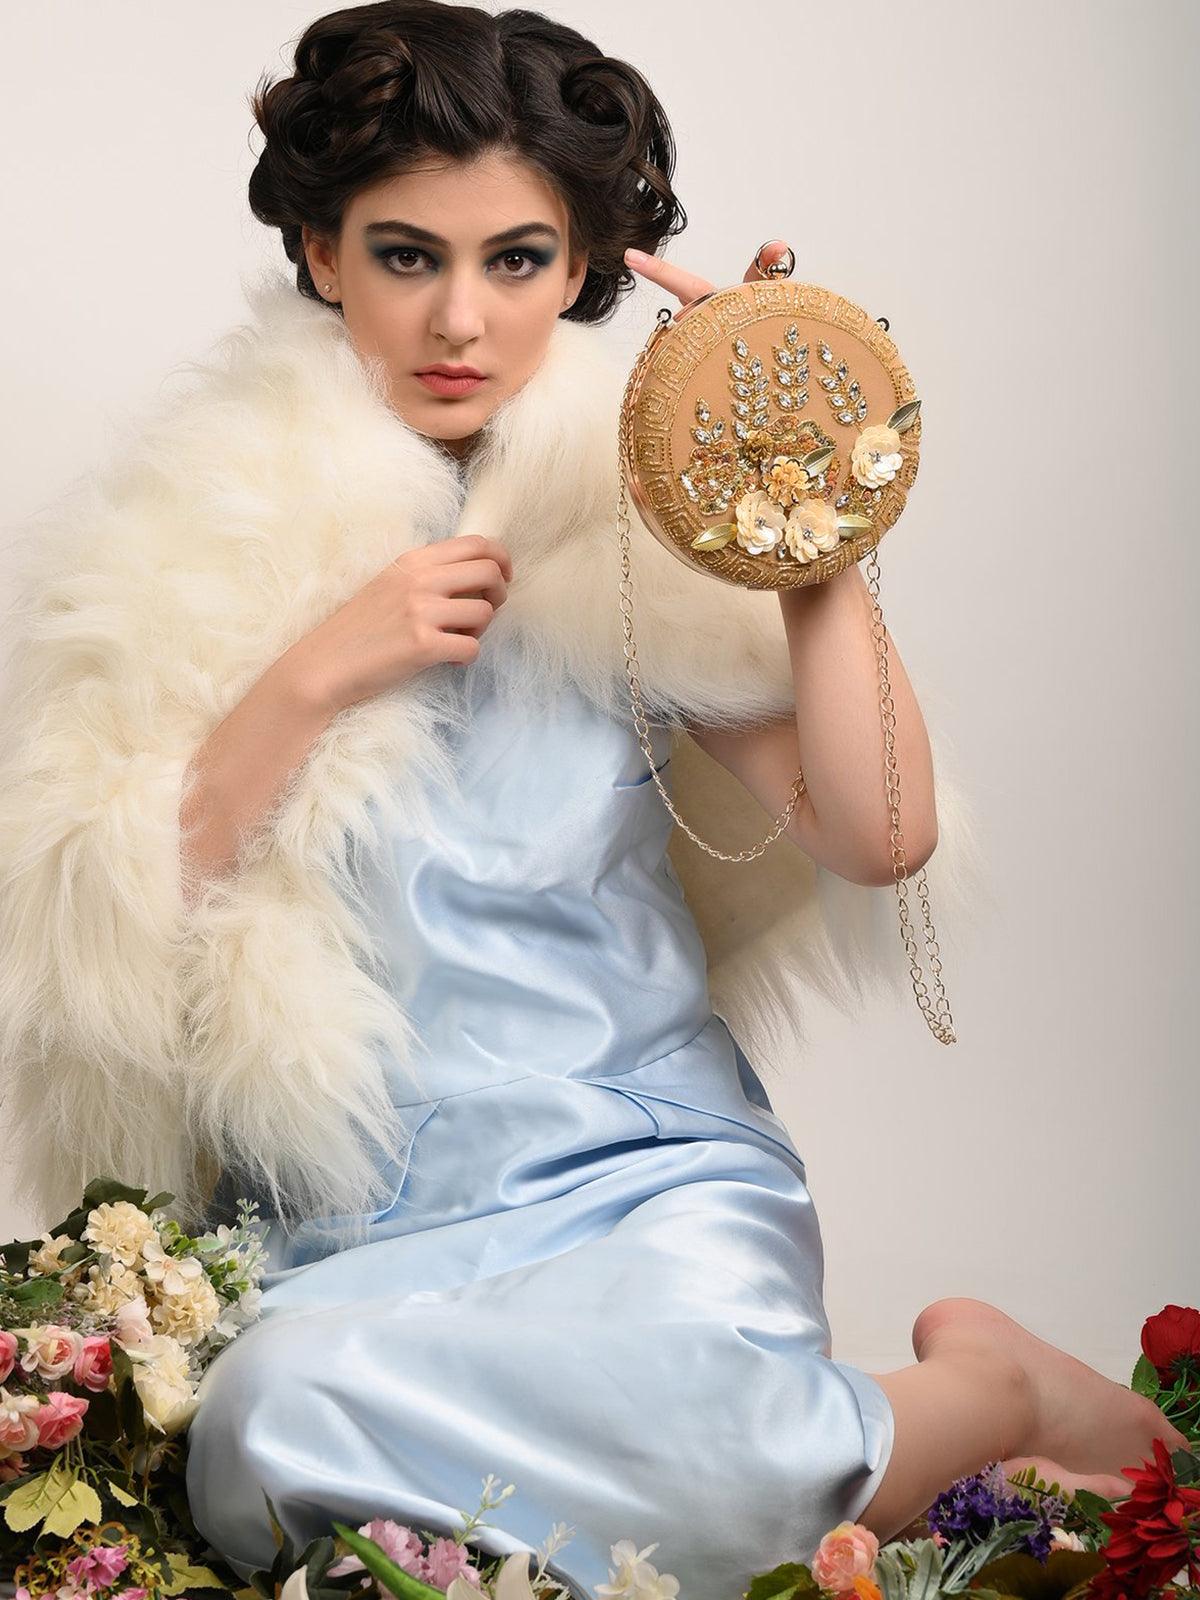 Round Embellished Inspired Sling Bag - Odette